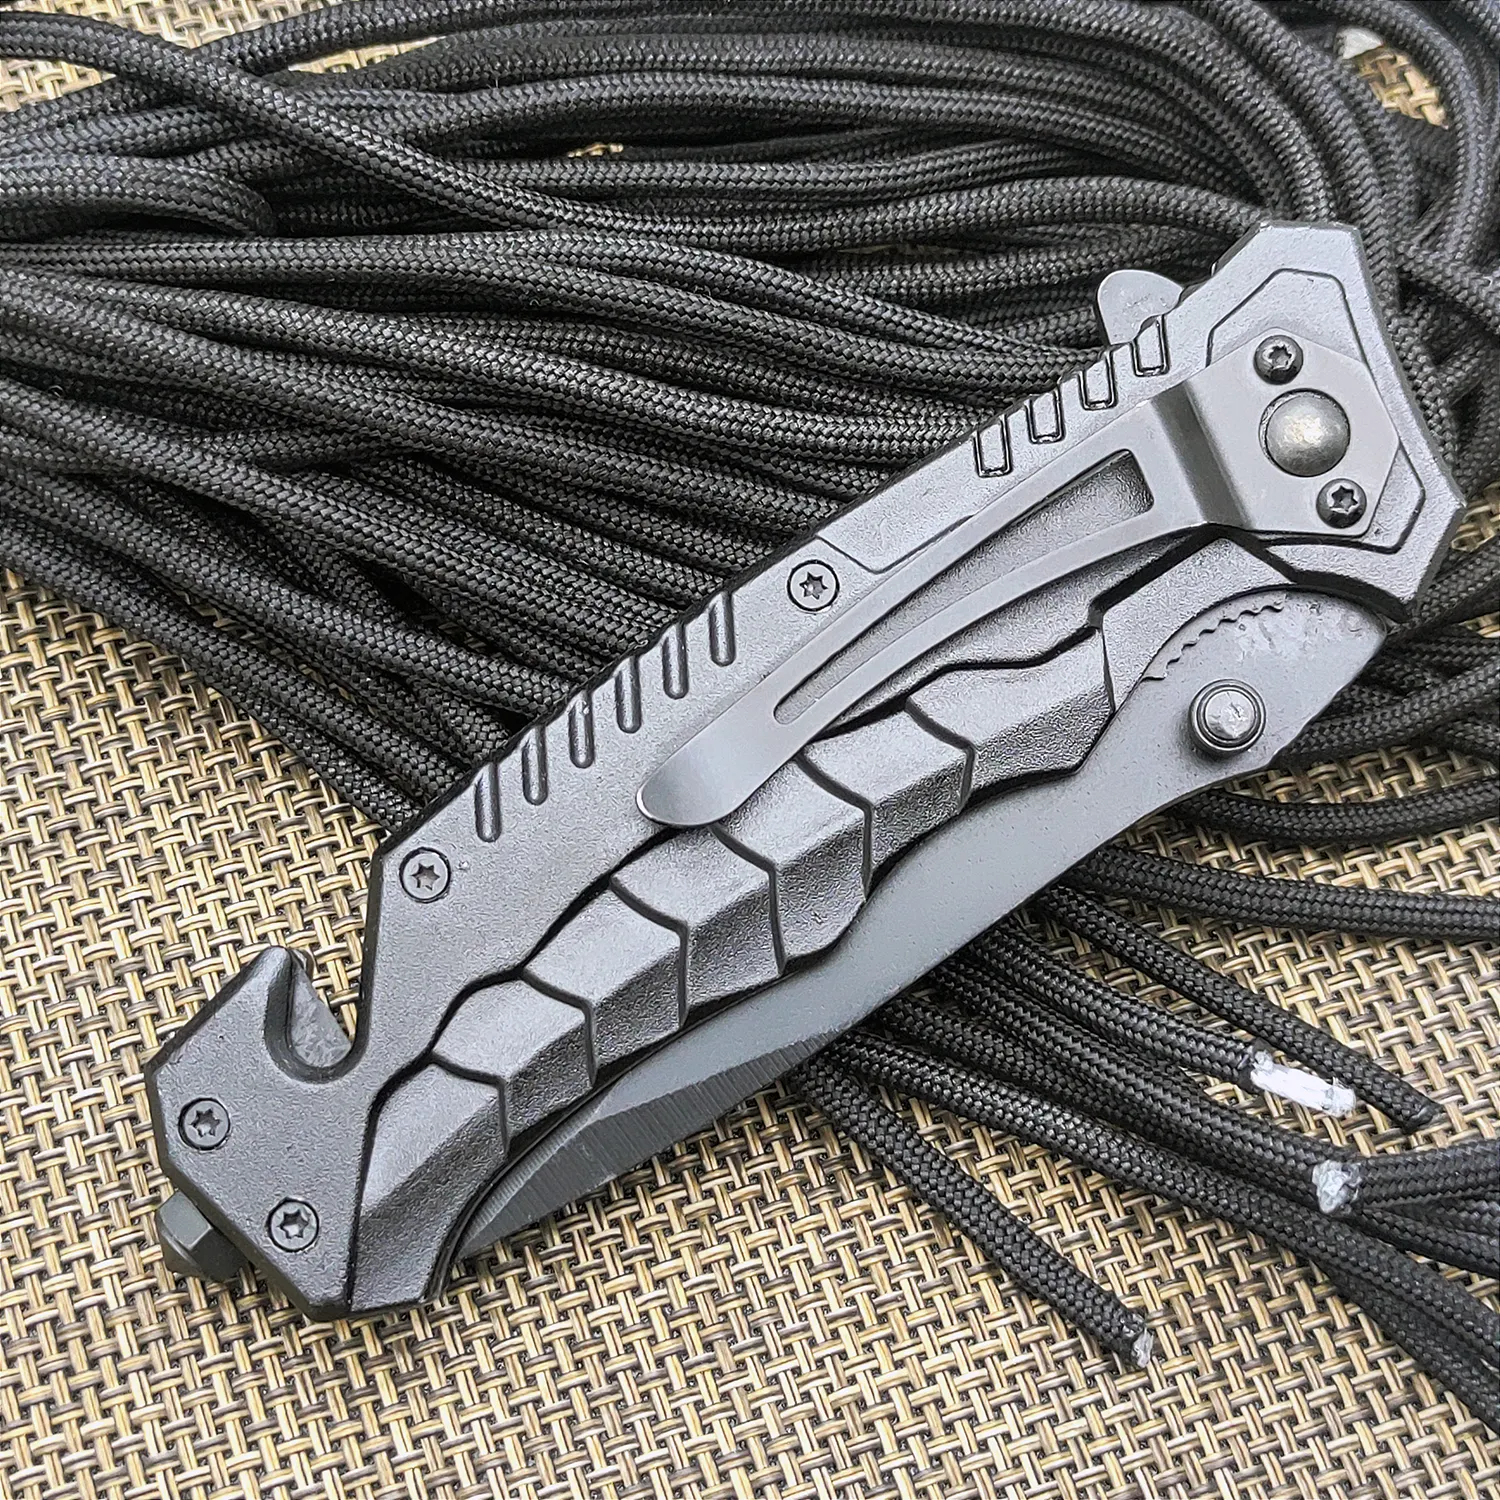 新しいデザインの売れ筋タクティカルナイフポケット折りたたみハンティングナイフ、ステンレス鋼の刃付きカスタマイズ可能